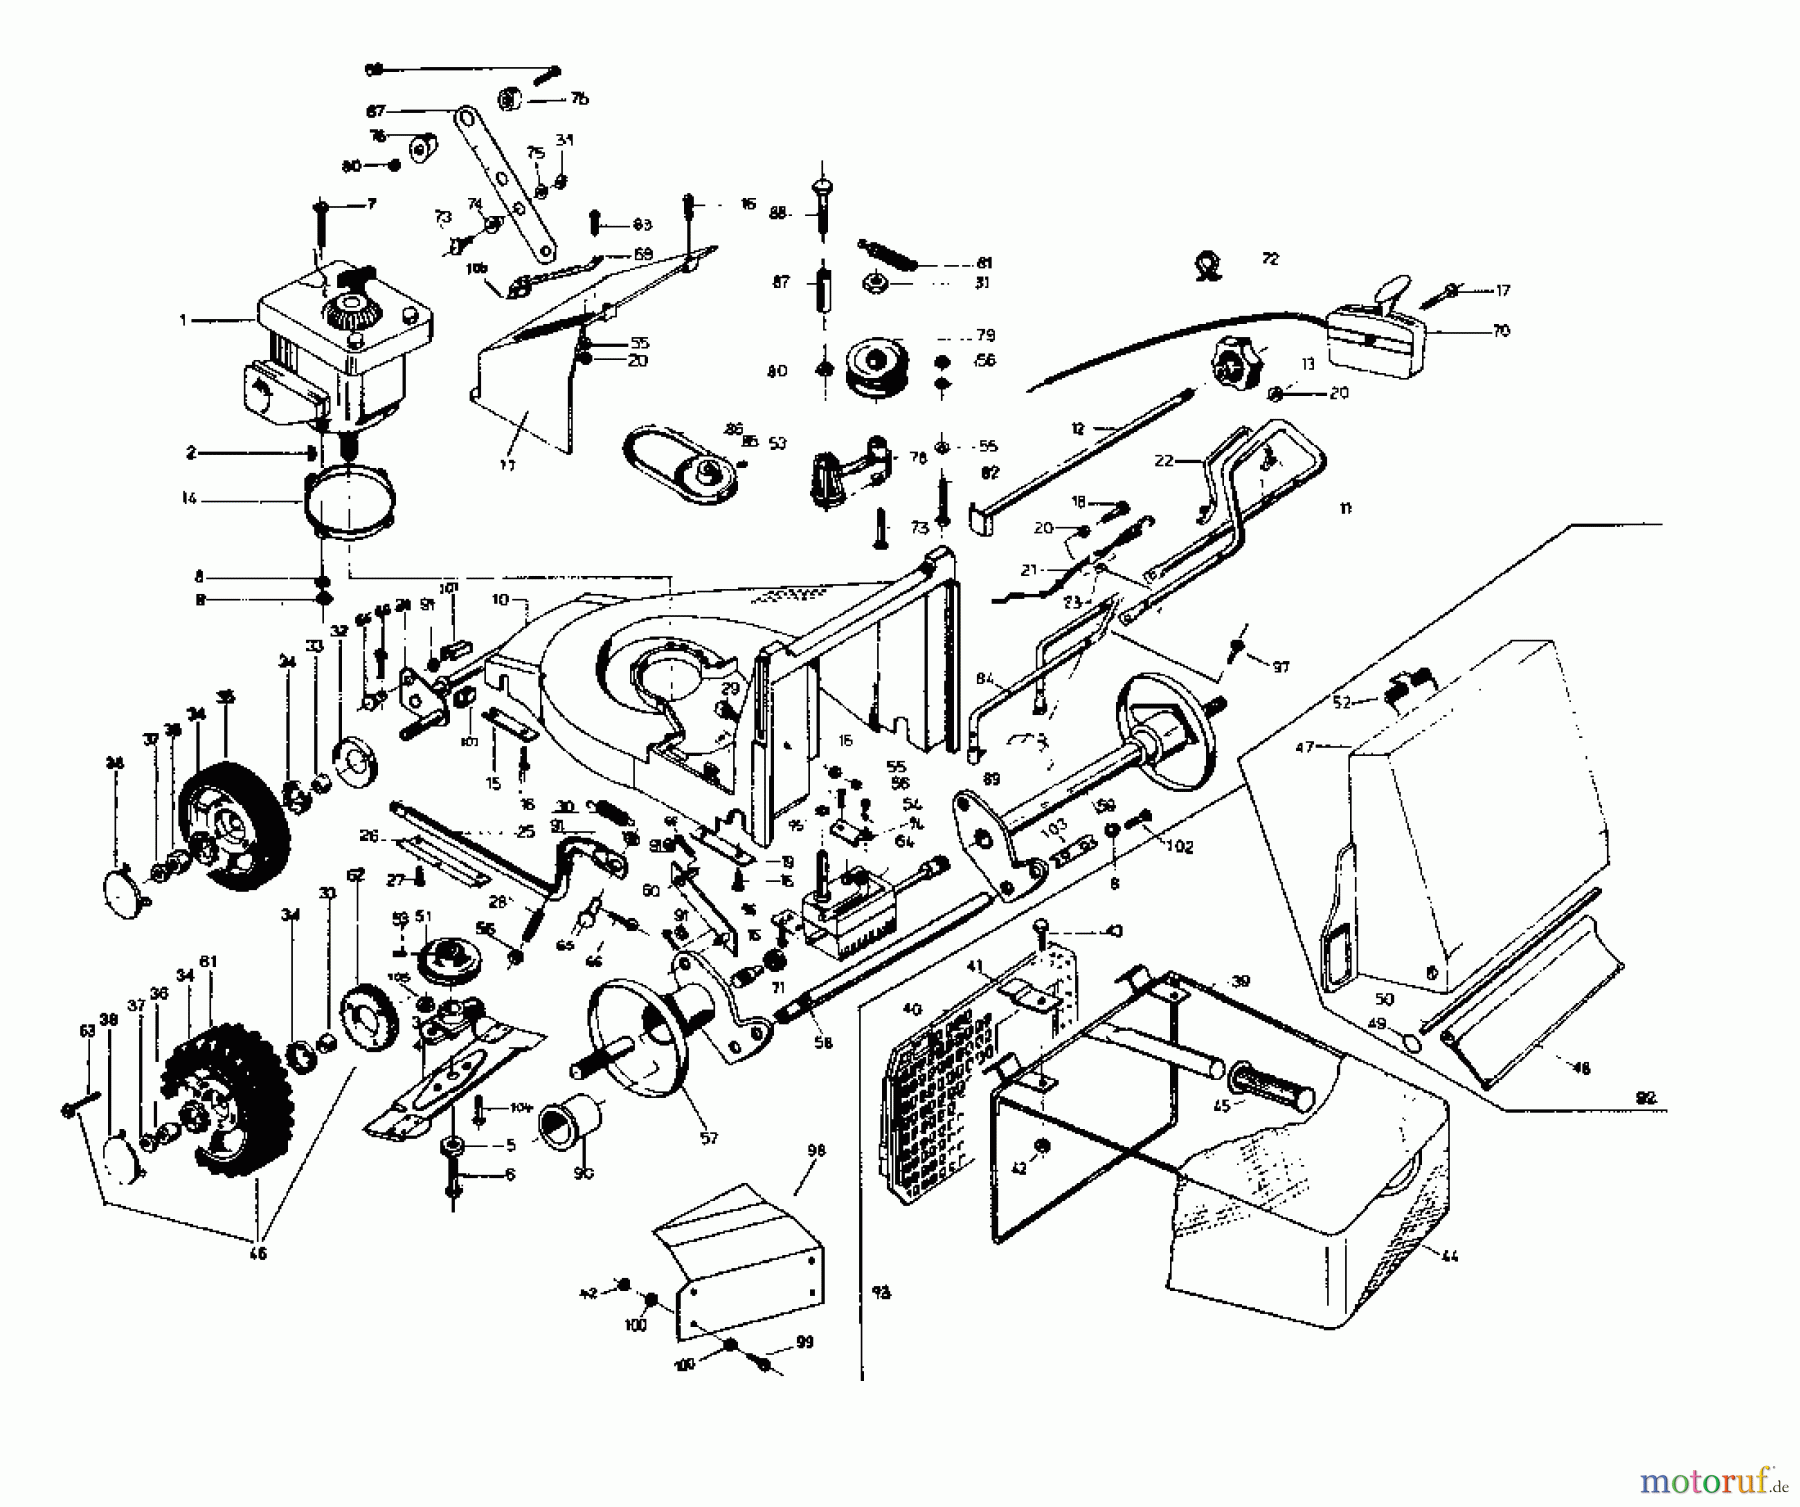  Rotaro Motormäher mit Antrieb ROTARO  48 S 189-0157  (1989) Grundgerät